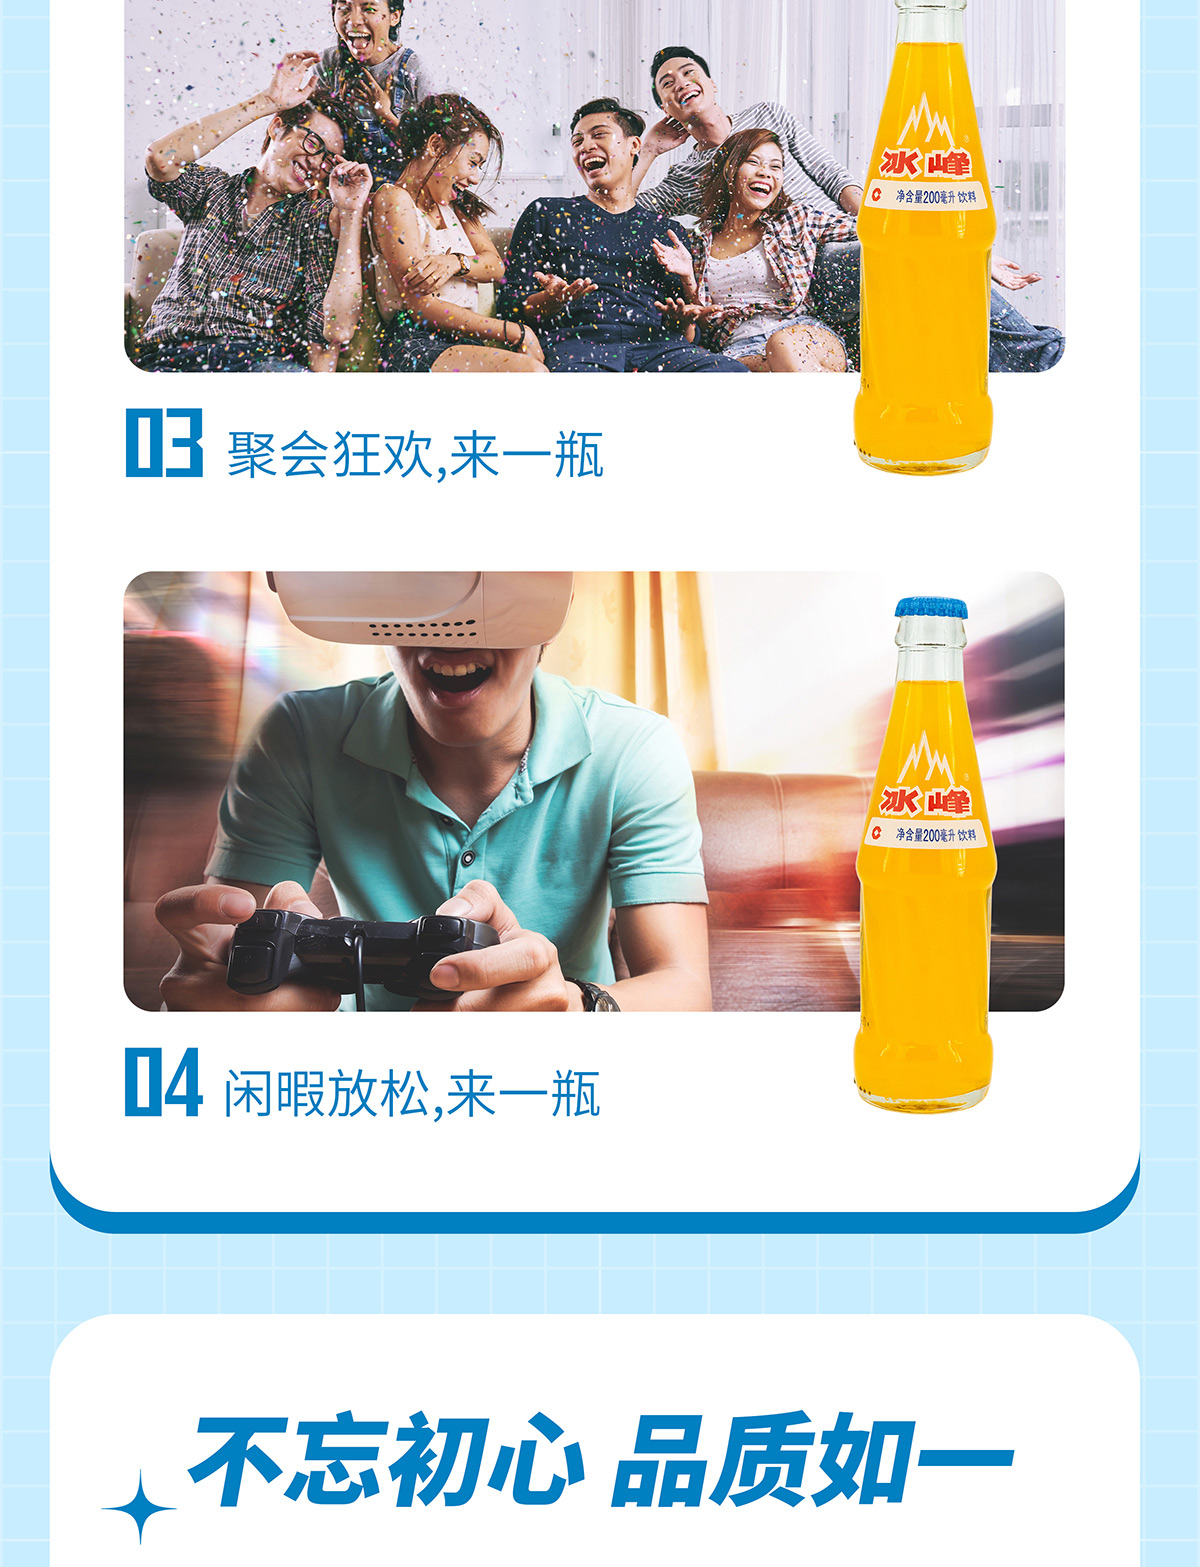 橙味玻璃瓶详情页小小_05.jpg